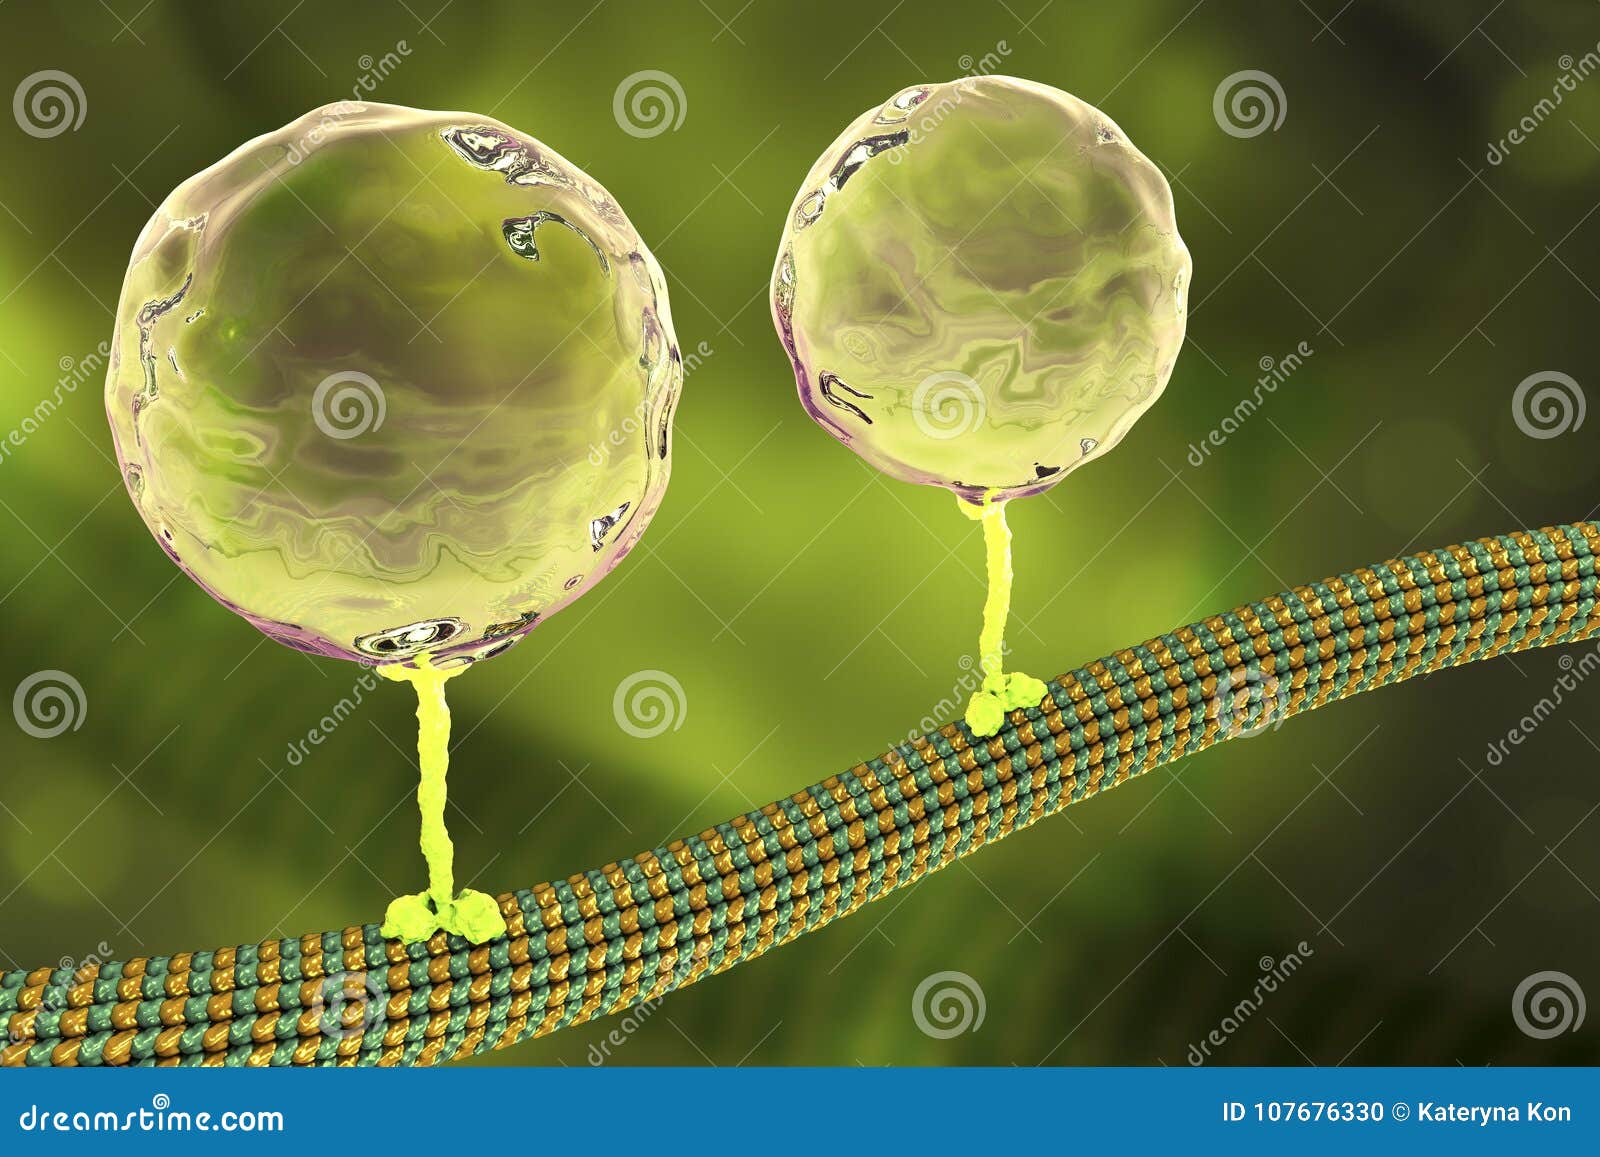 Движение внутри клетки. Эндорфин под микроскопом. Кинезин. Вода внутри клетки. Кинезин и Эндорфин.